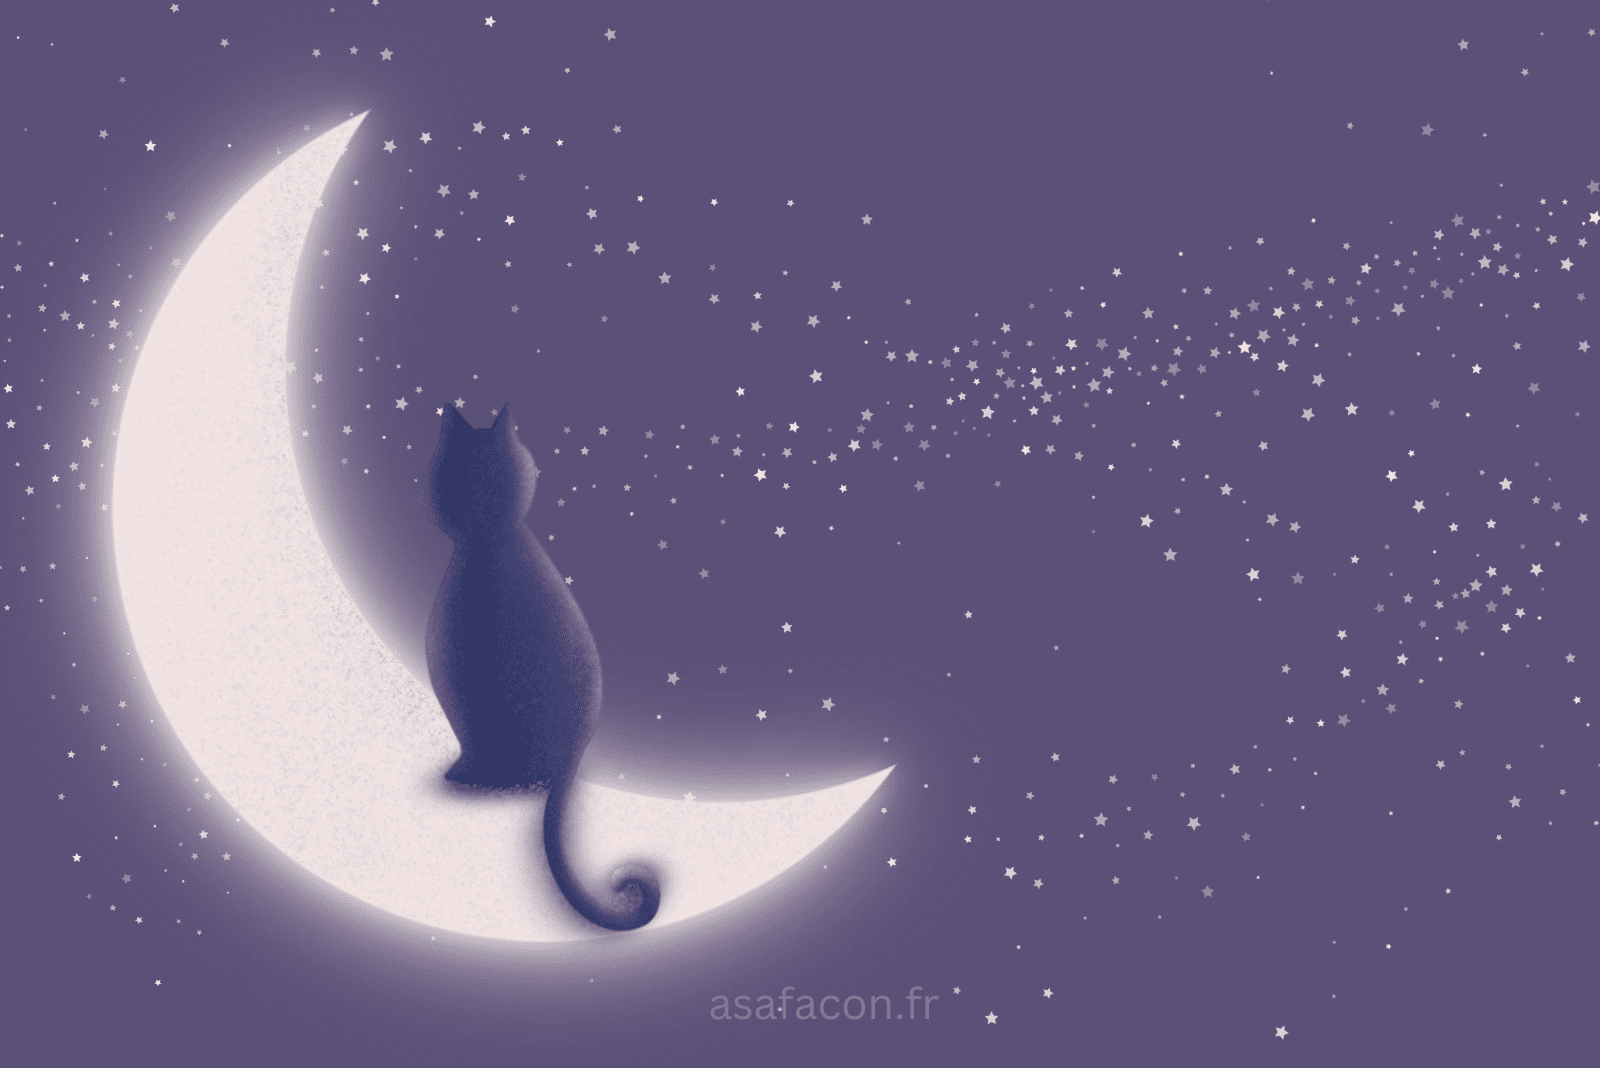 illustration d'un chat sur la lune